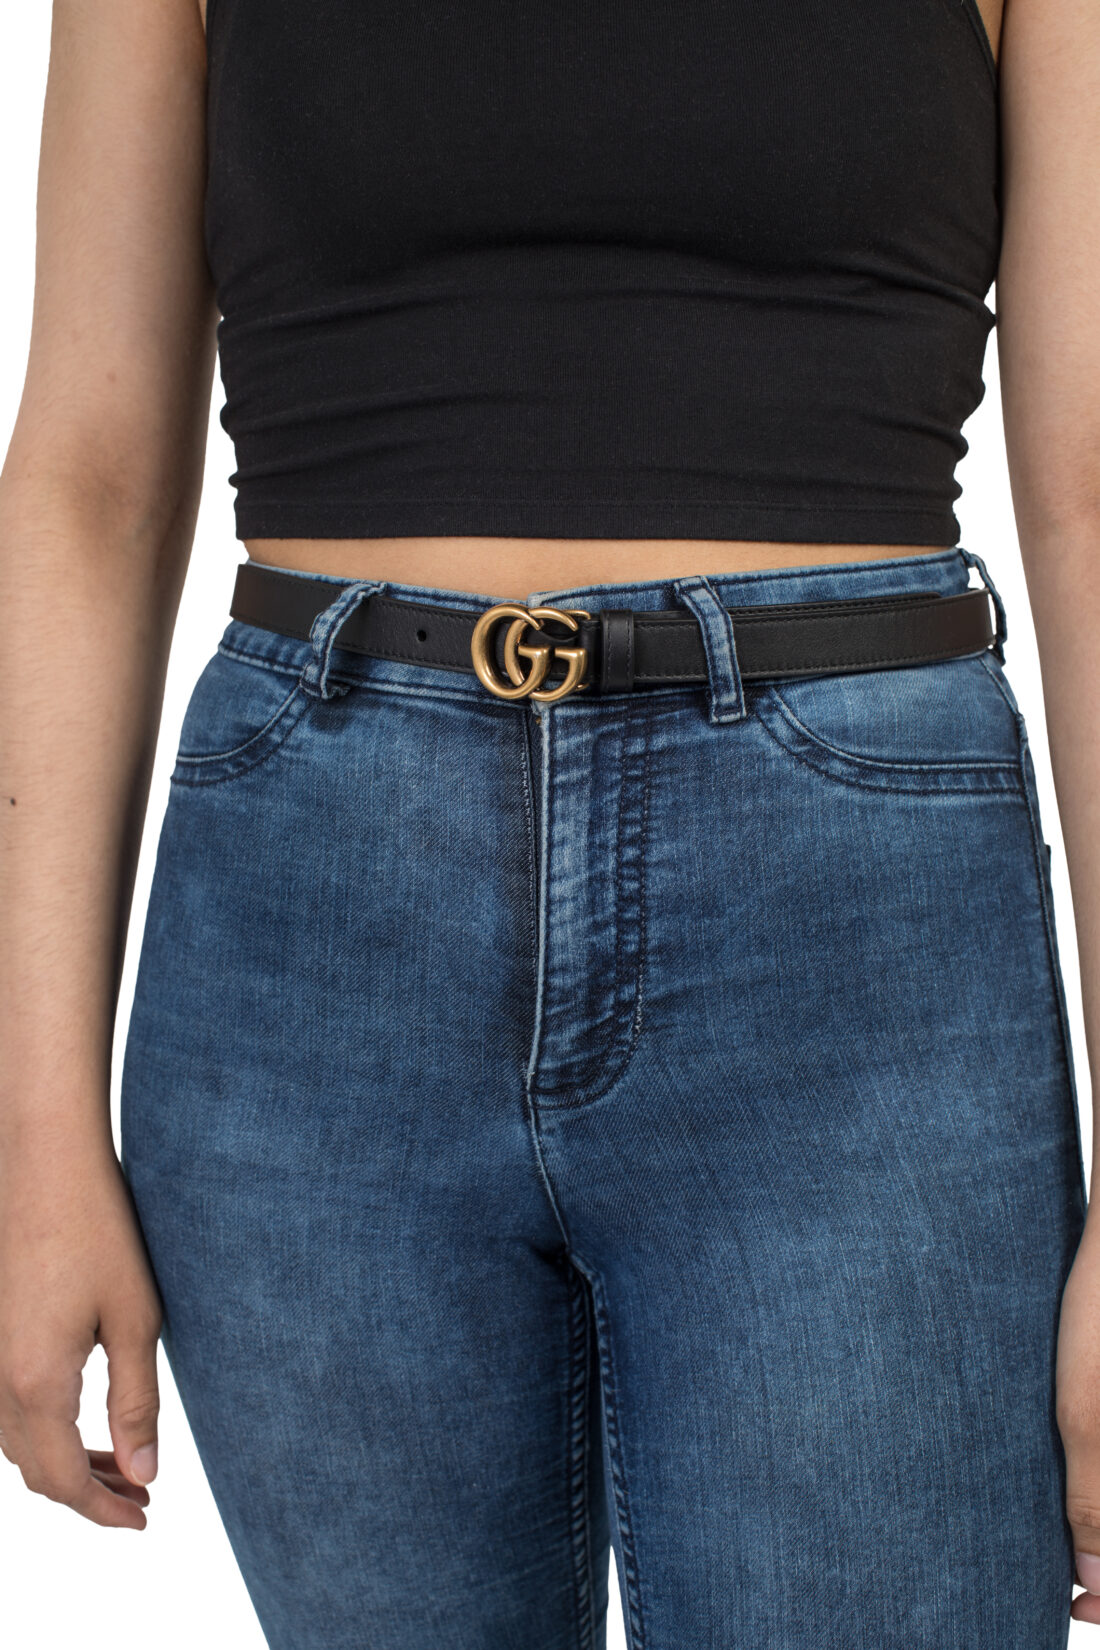 gucci belt on model